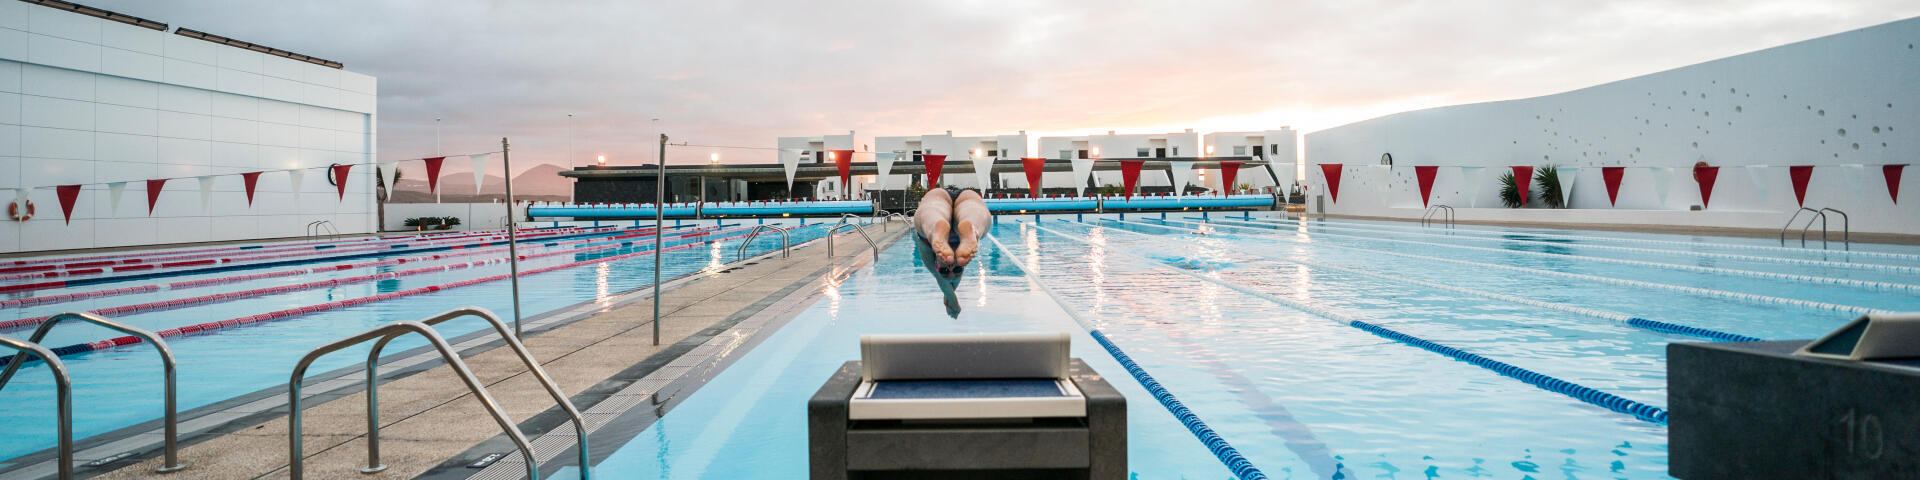 Homme en lunettes de natation dans la piscine photo – Photo Etats